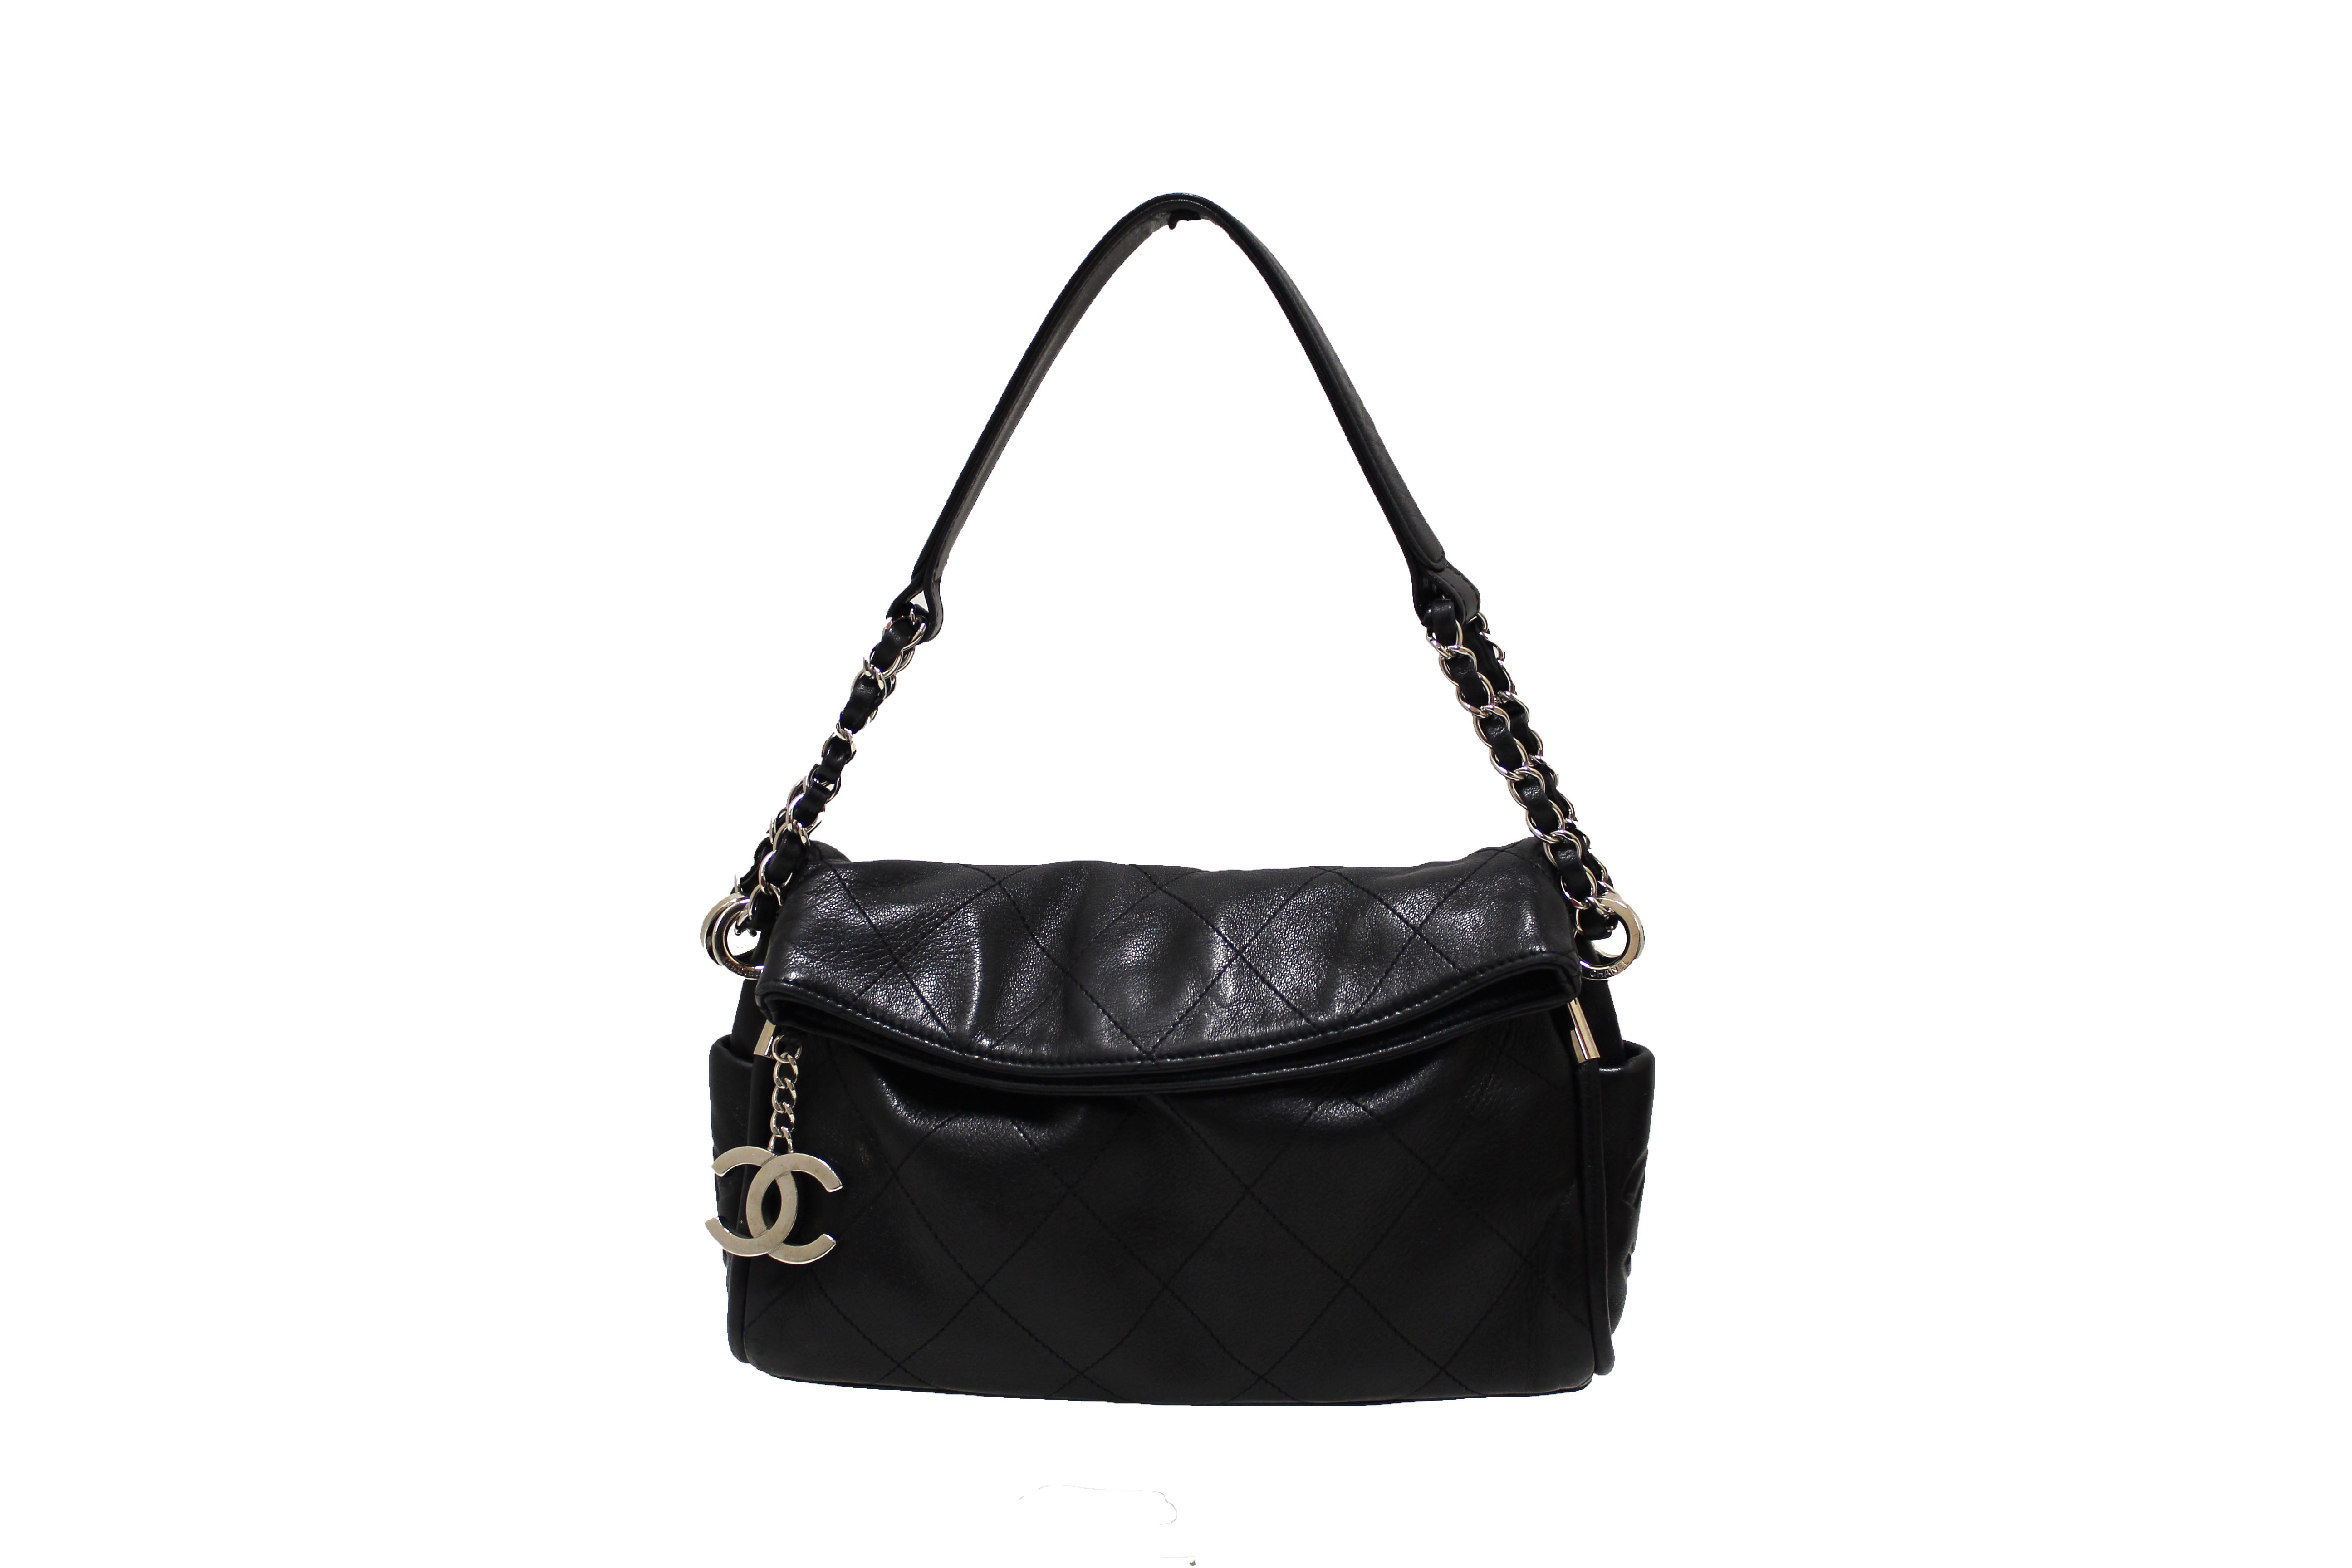 Black Chanel Lambskin Ultimate Soft Frame Bag